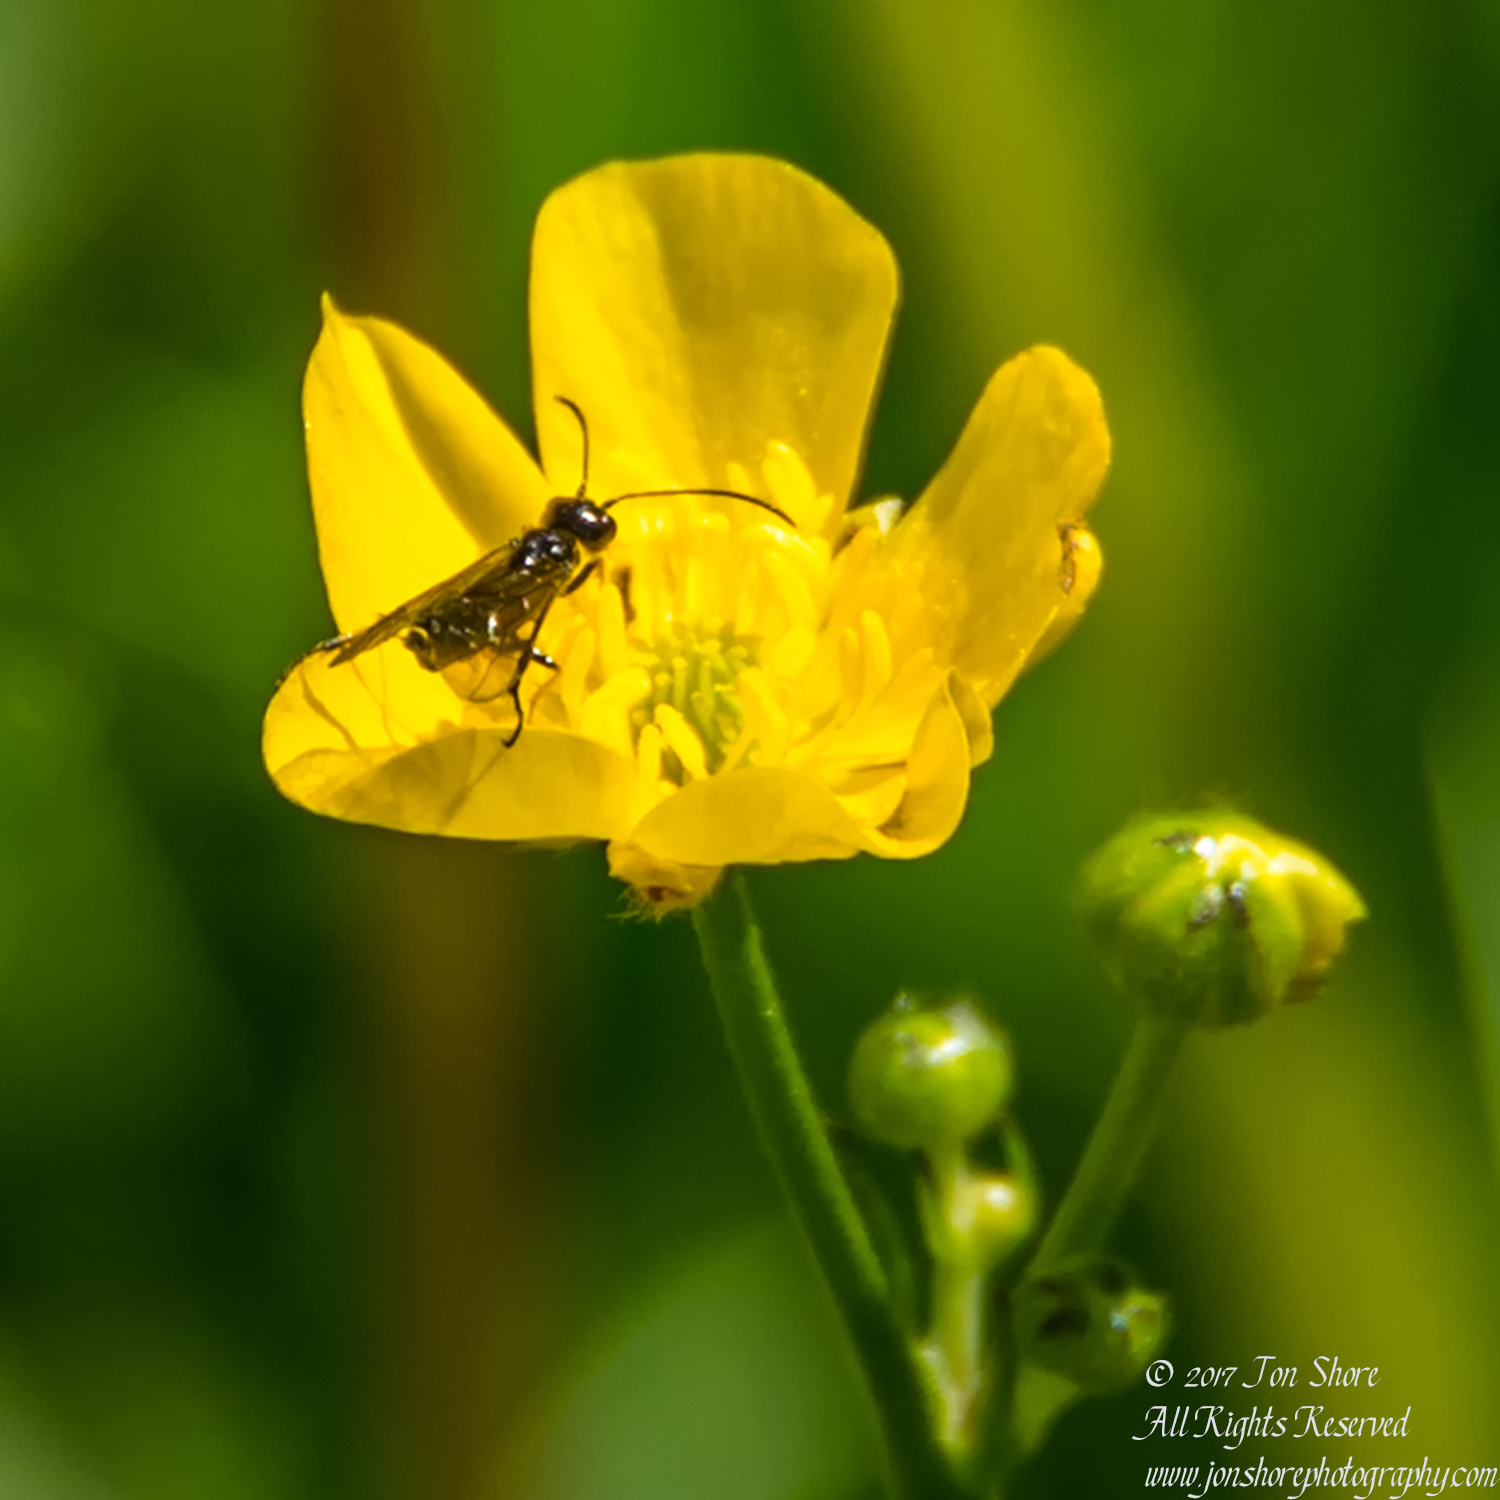 Bug in Flower Zolitude Latvia June 2017 by Jon Shore. Nikkor 300mm